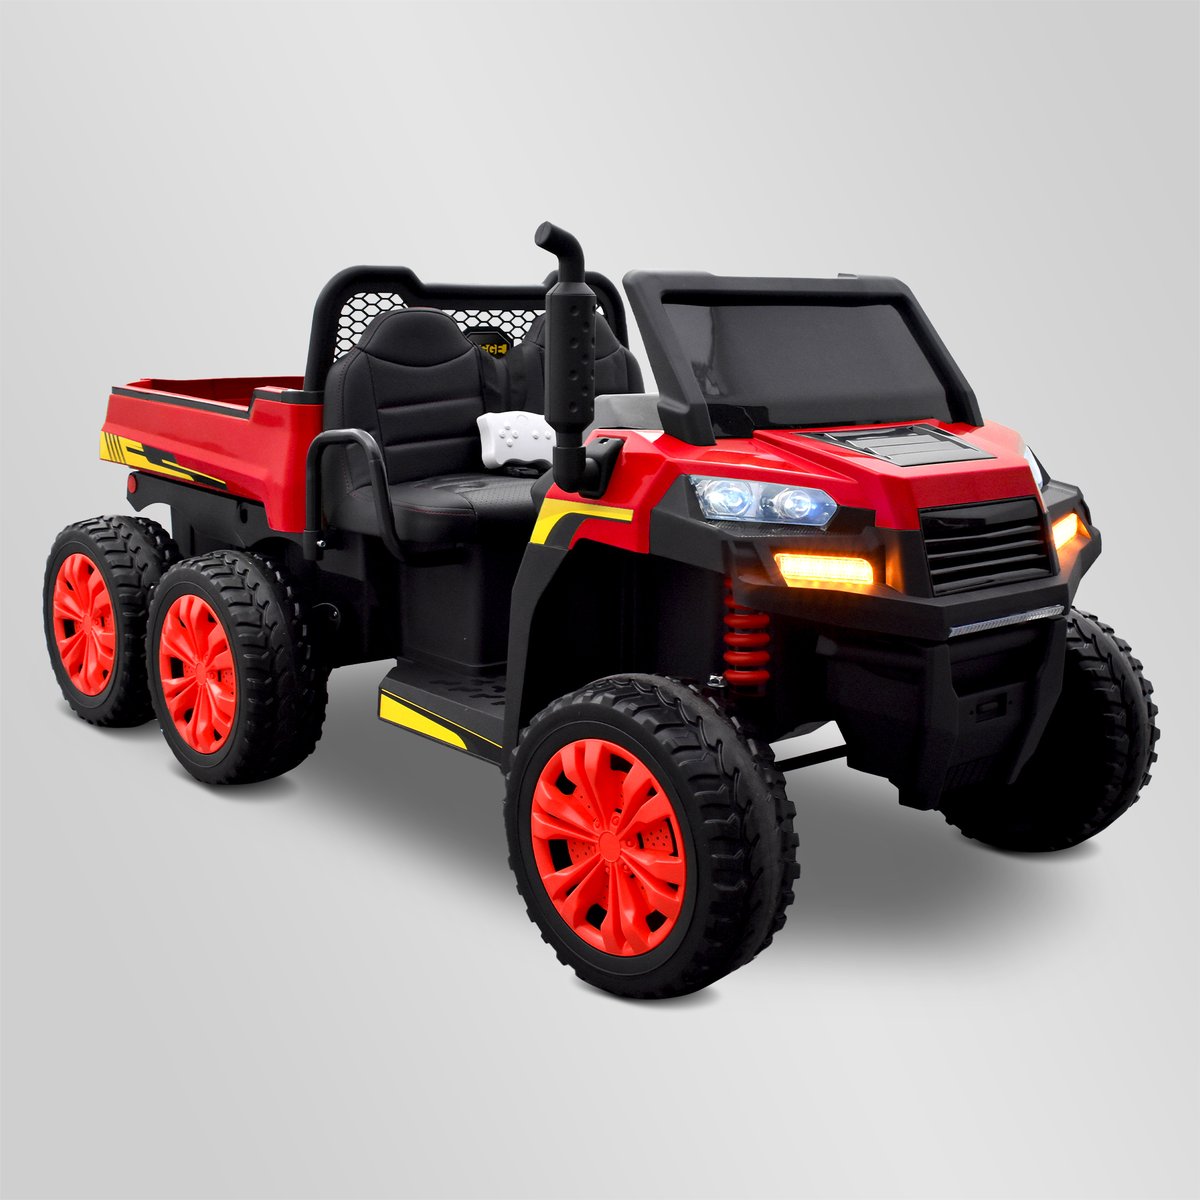 Tracteur électrique enfant - smx tractor Rouge | Smallmx - Dirt bike, Pit  bike, Quads, Minimoto